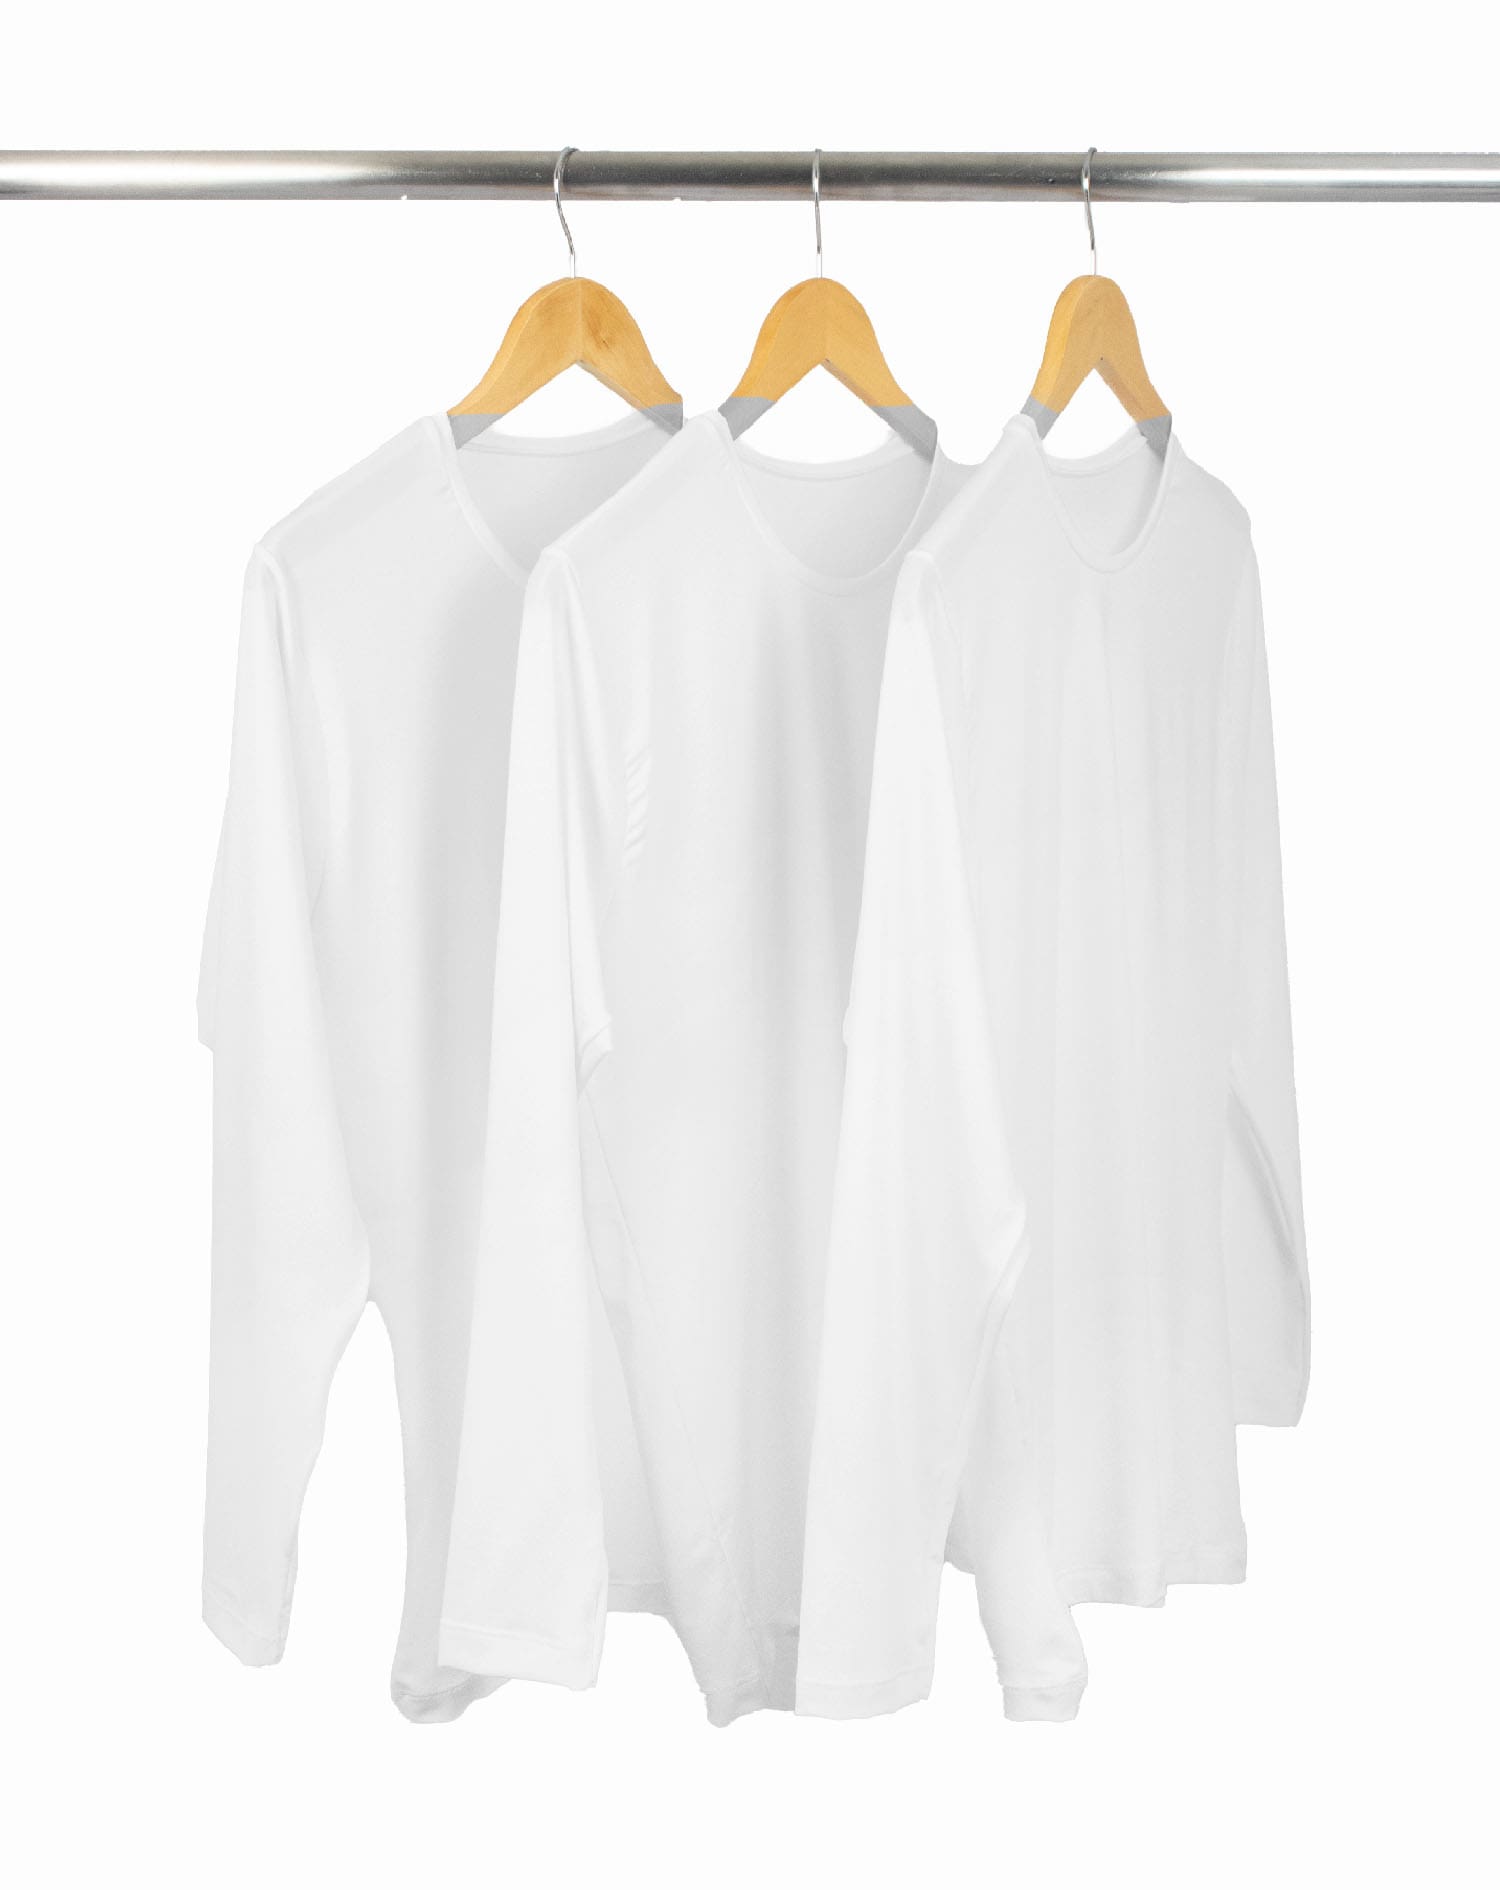 Kit 3 Camisetas Segunda Pele Manga Longa Feminina Branca UV 50+